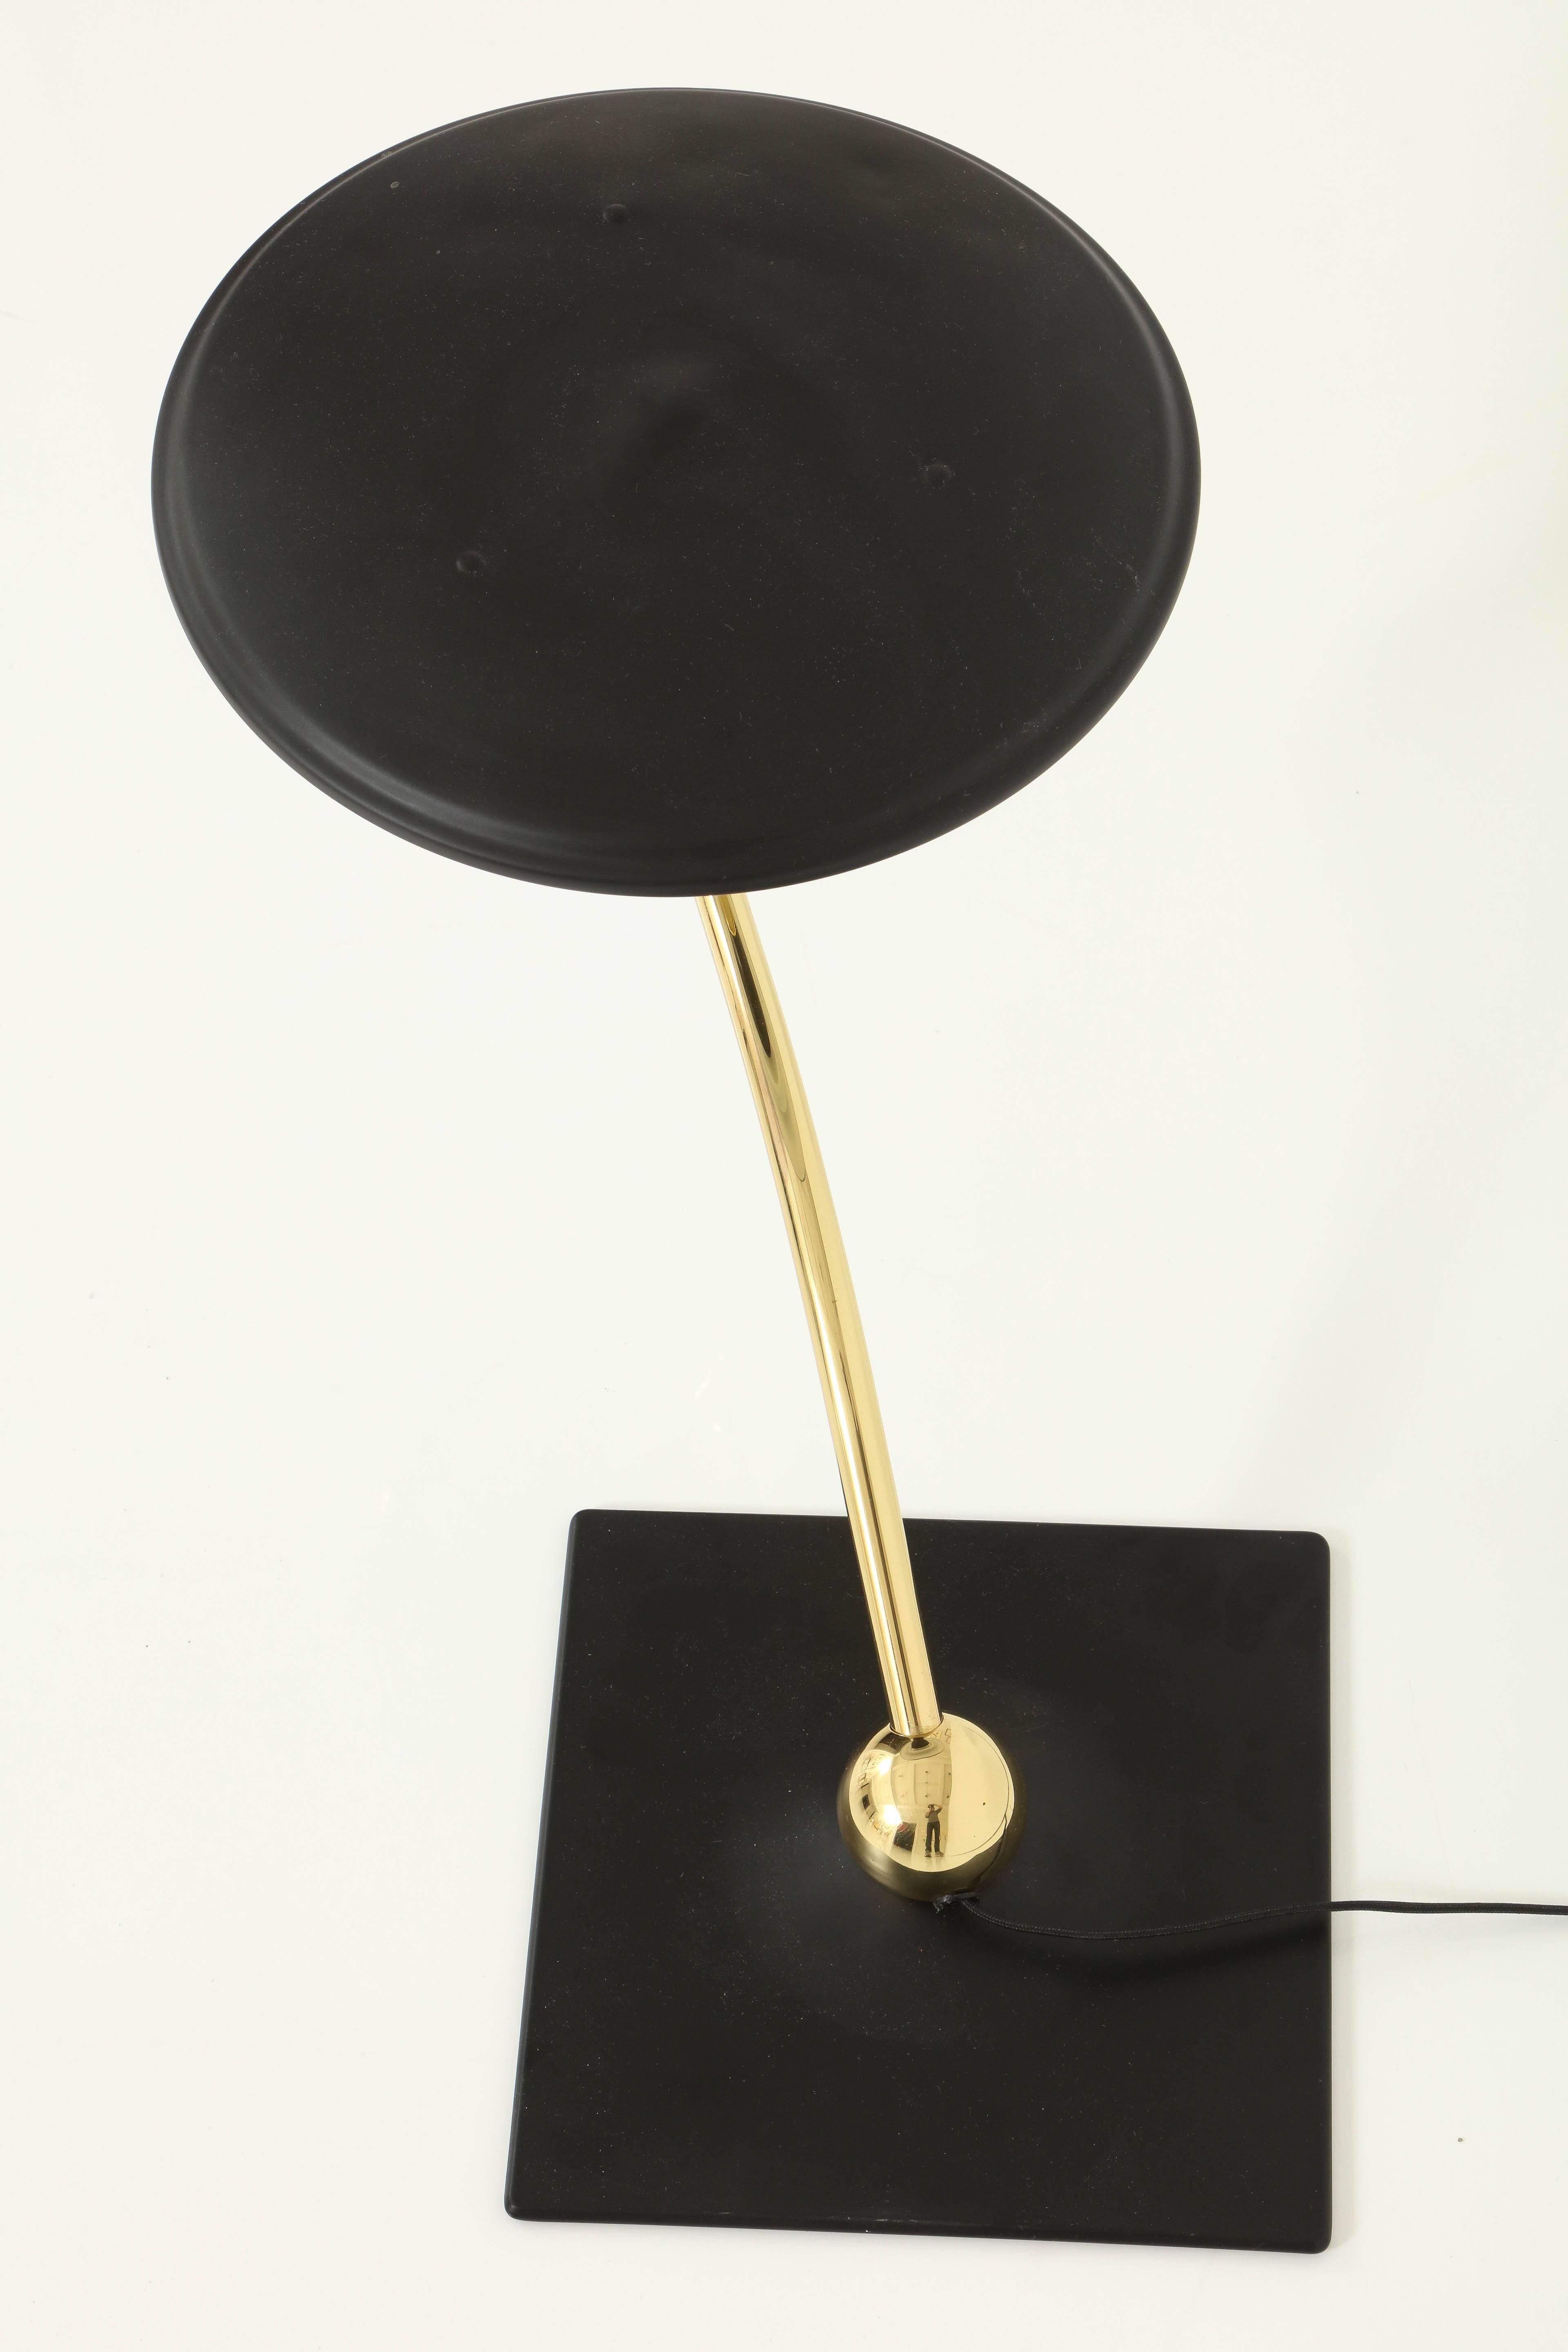 1930s desk lamp